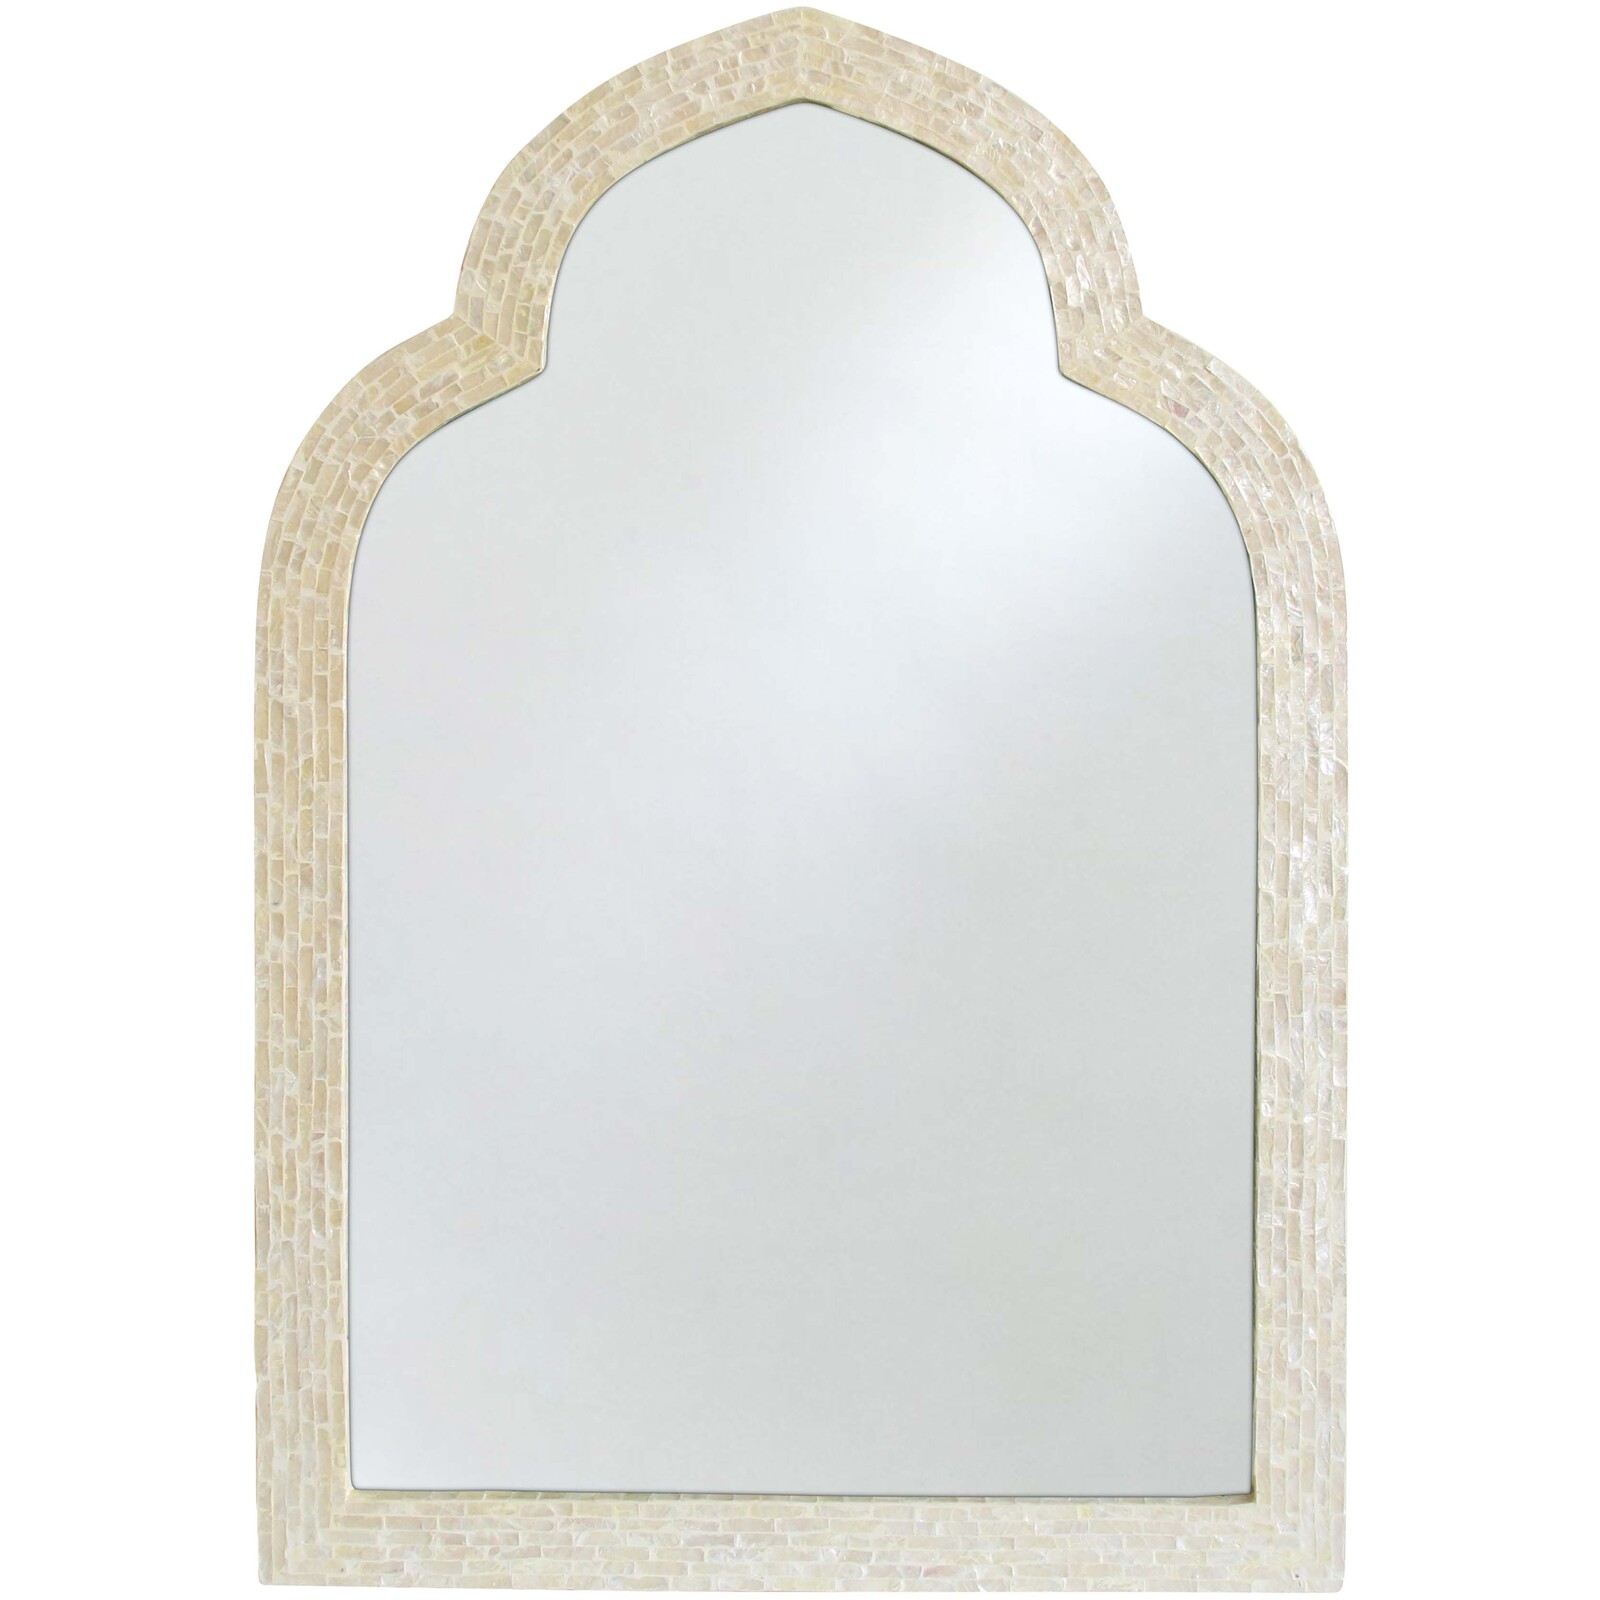 Mirror Moroc Ivory Tiled